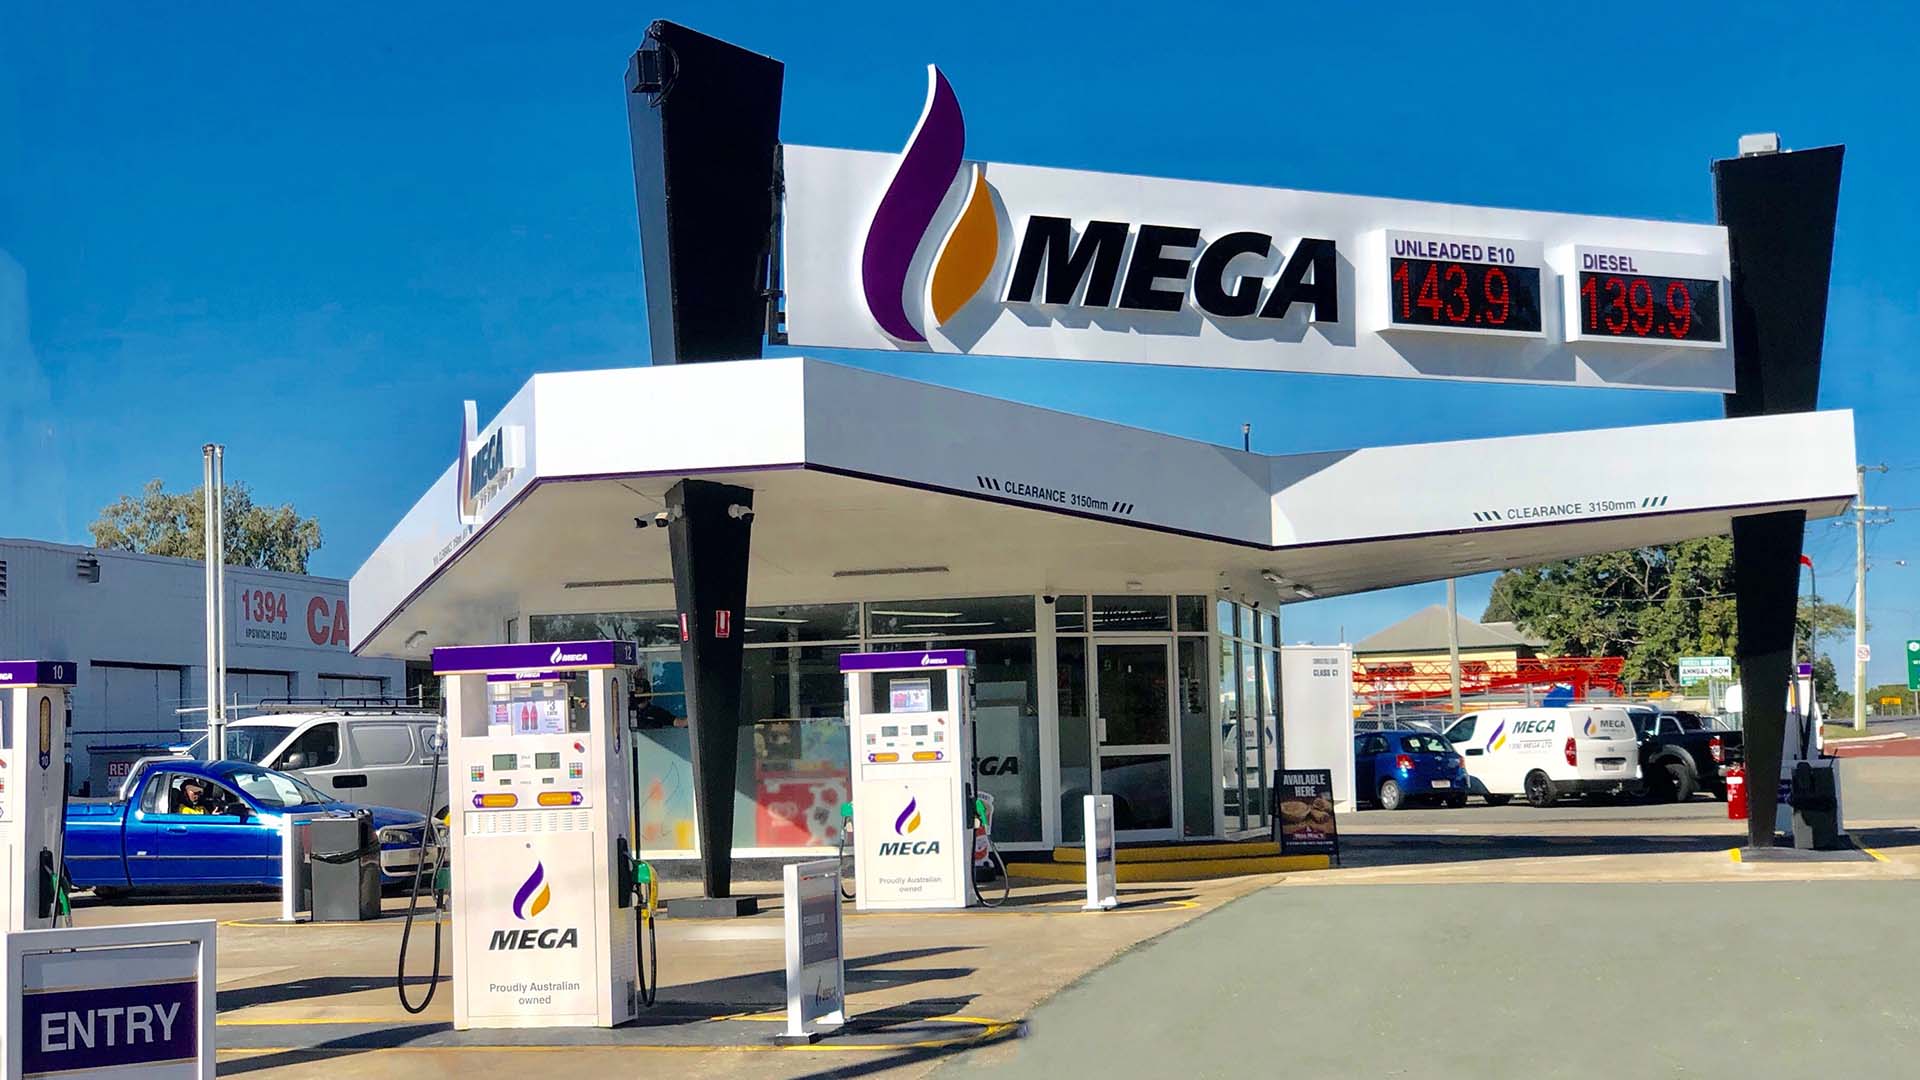 99-Cent Petrol at Mega Fuels